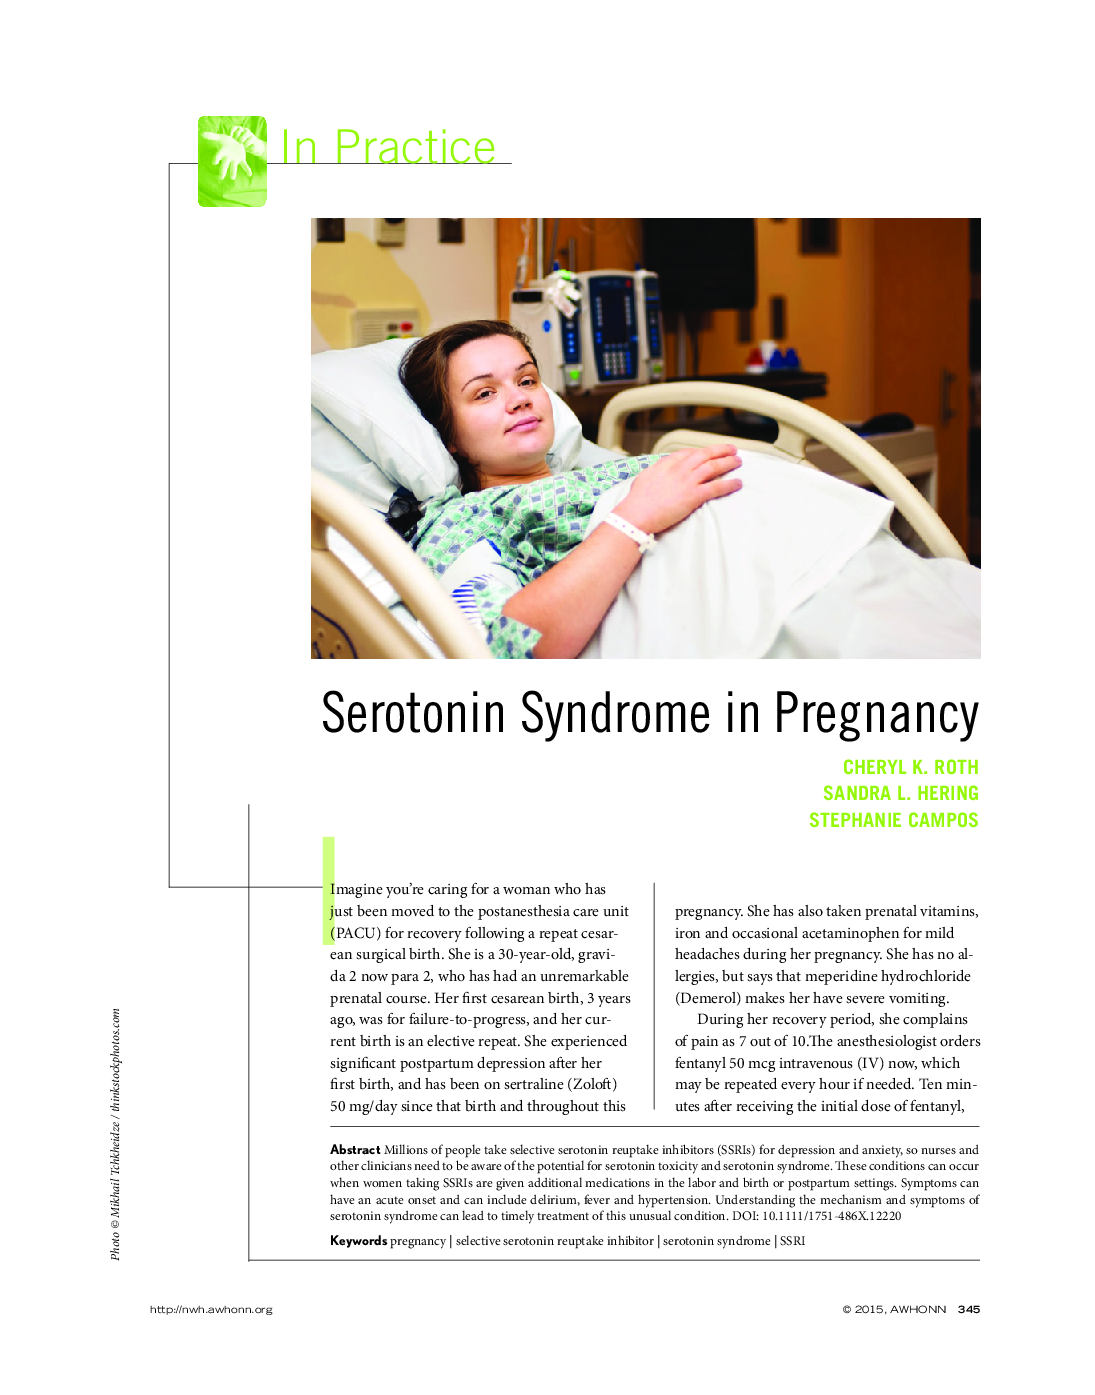 Serotonin Syndrome in Pregnancy